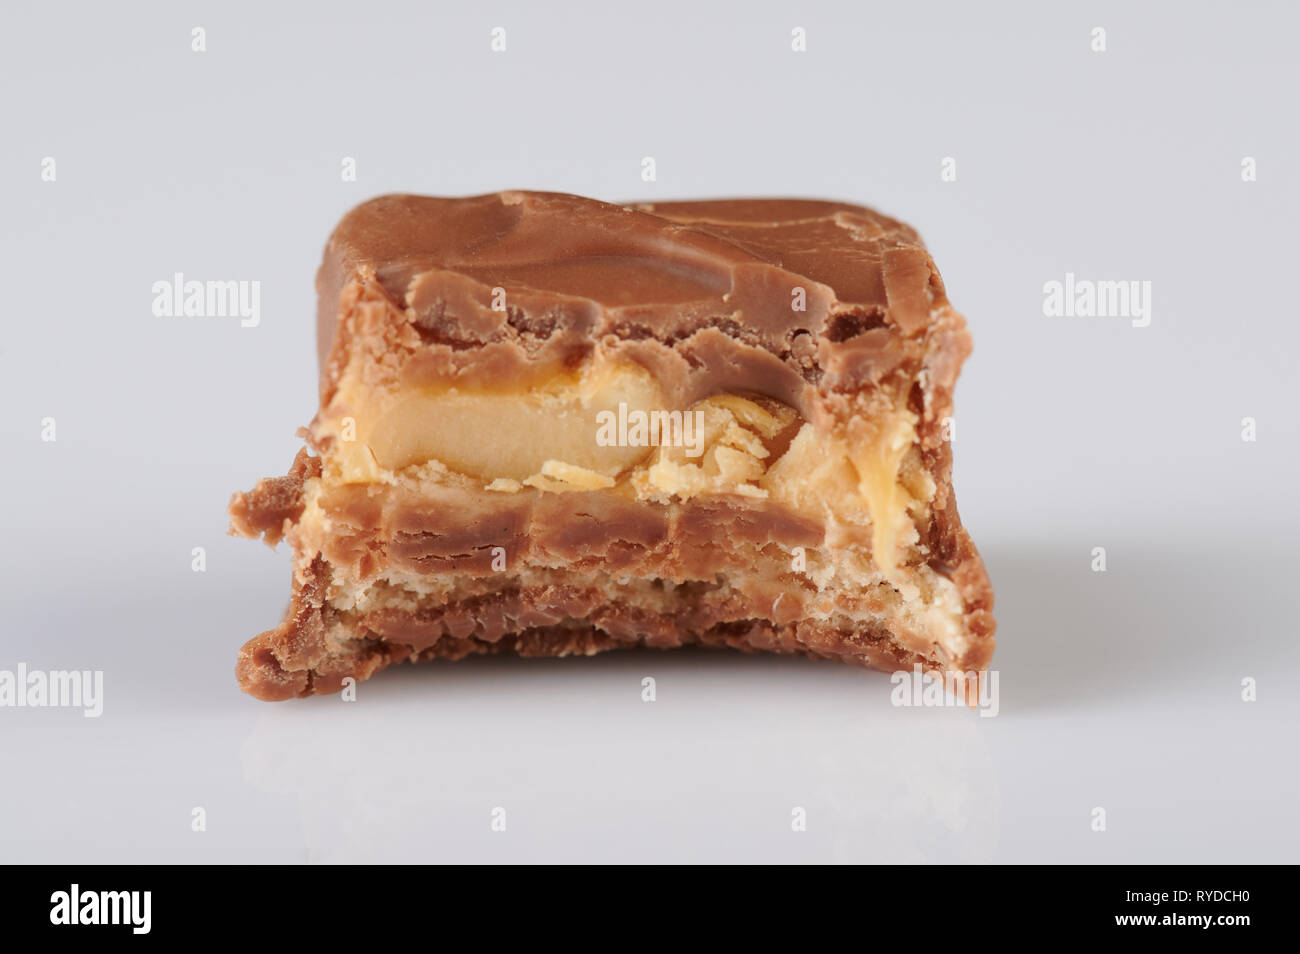 Sweet caramel candy bar bite isolated on white background Stock Photo